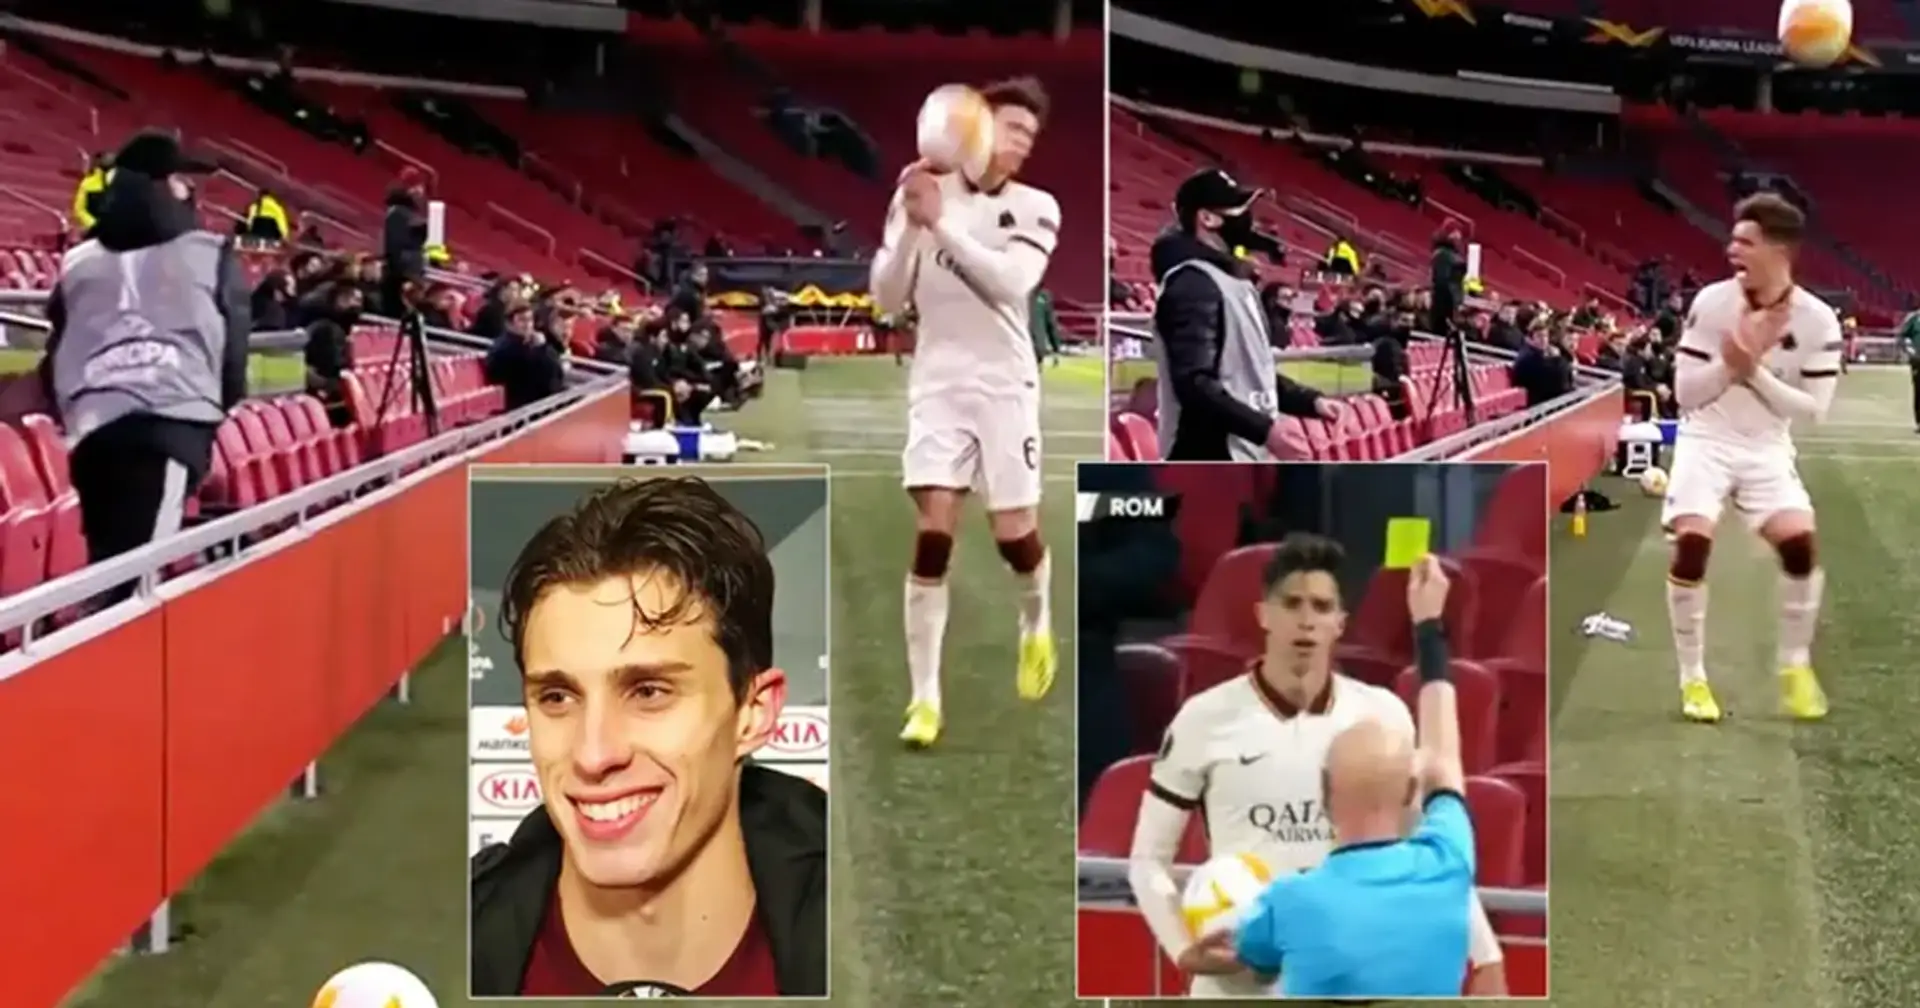 El recogepelotas del Ajax lanza una pelota a la estrella de la Roma por perder tiempo, el jugador responde: 'Entiendo'